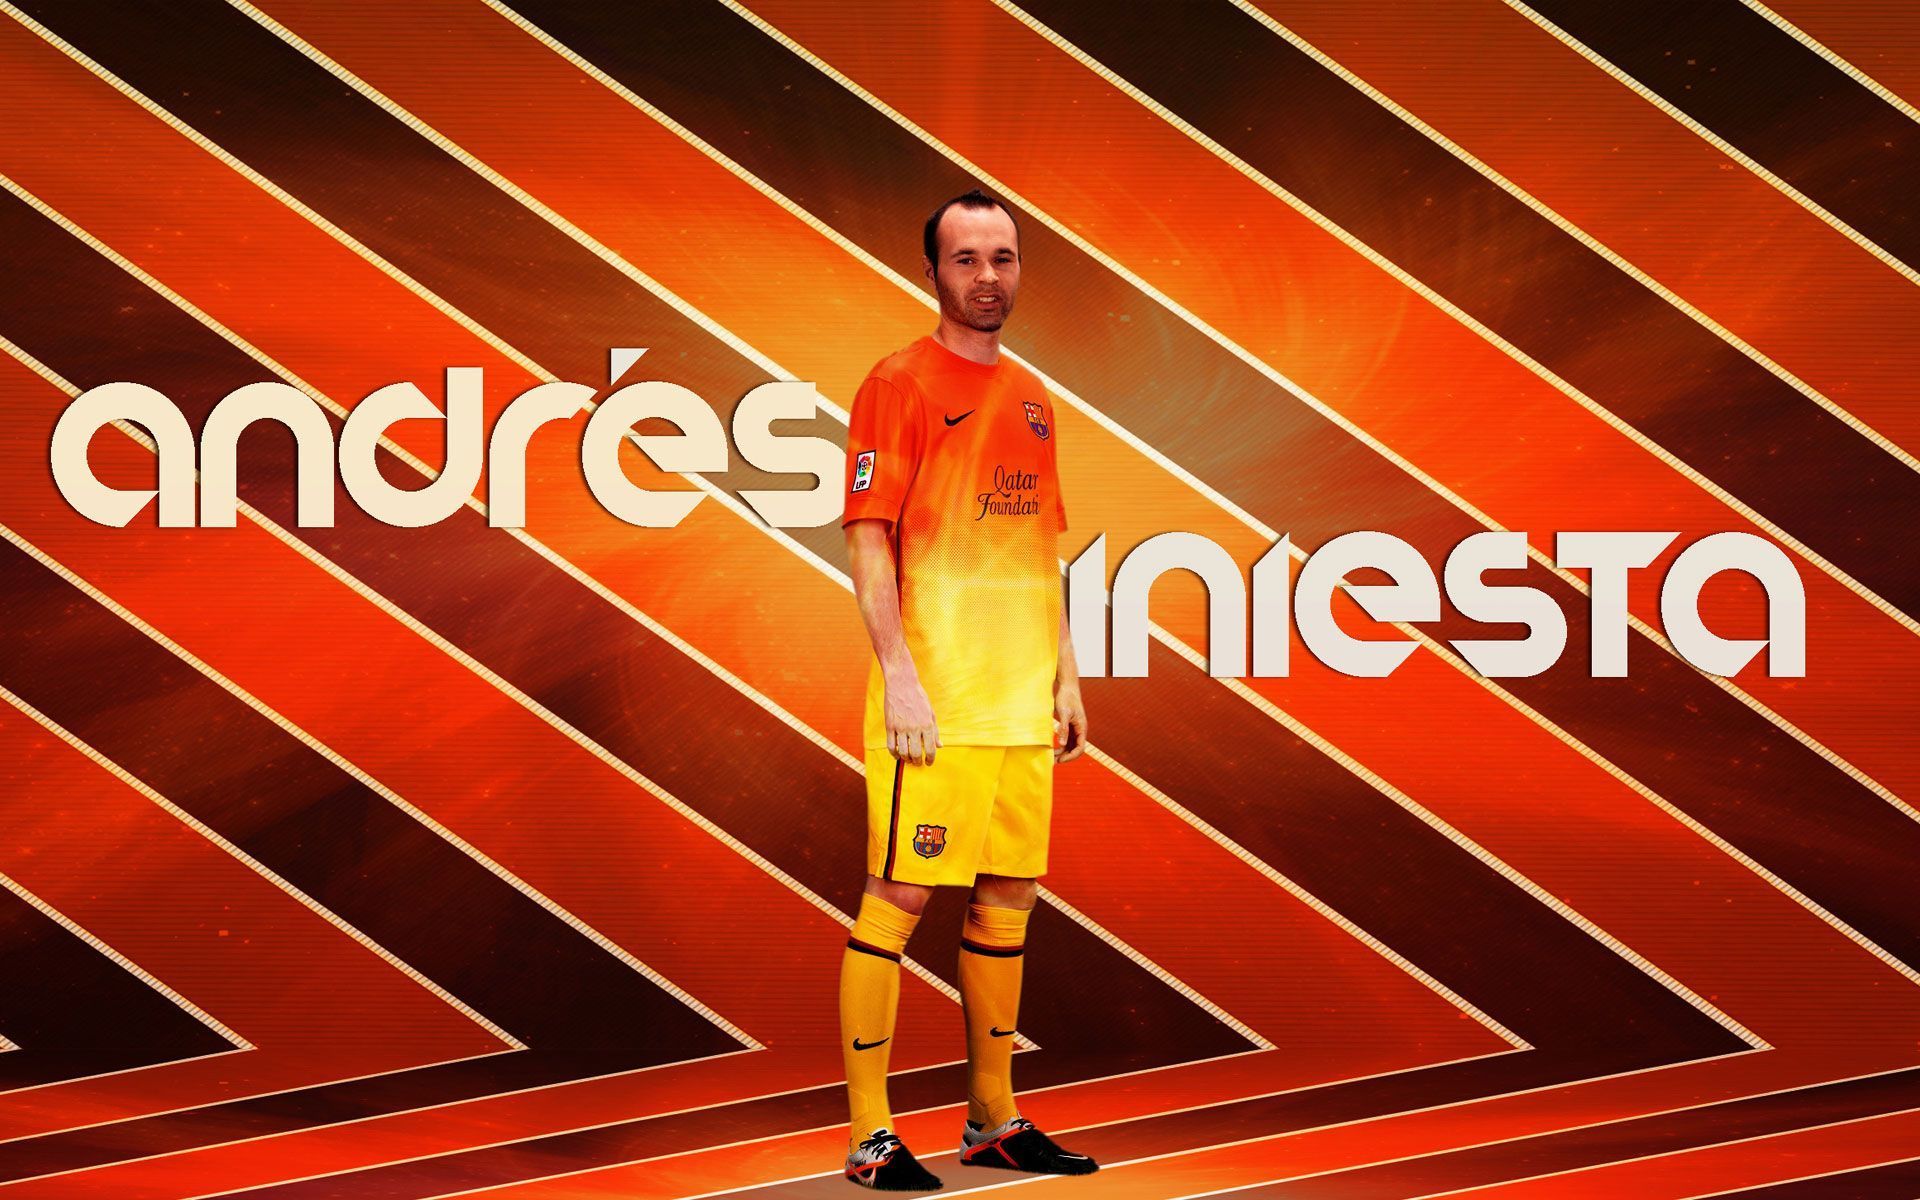 Andres Iniesta Qatar Foundation Wallpaper - Football HD Wallpapers